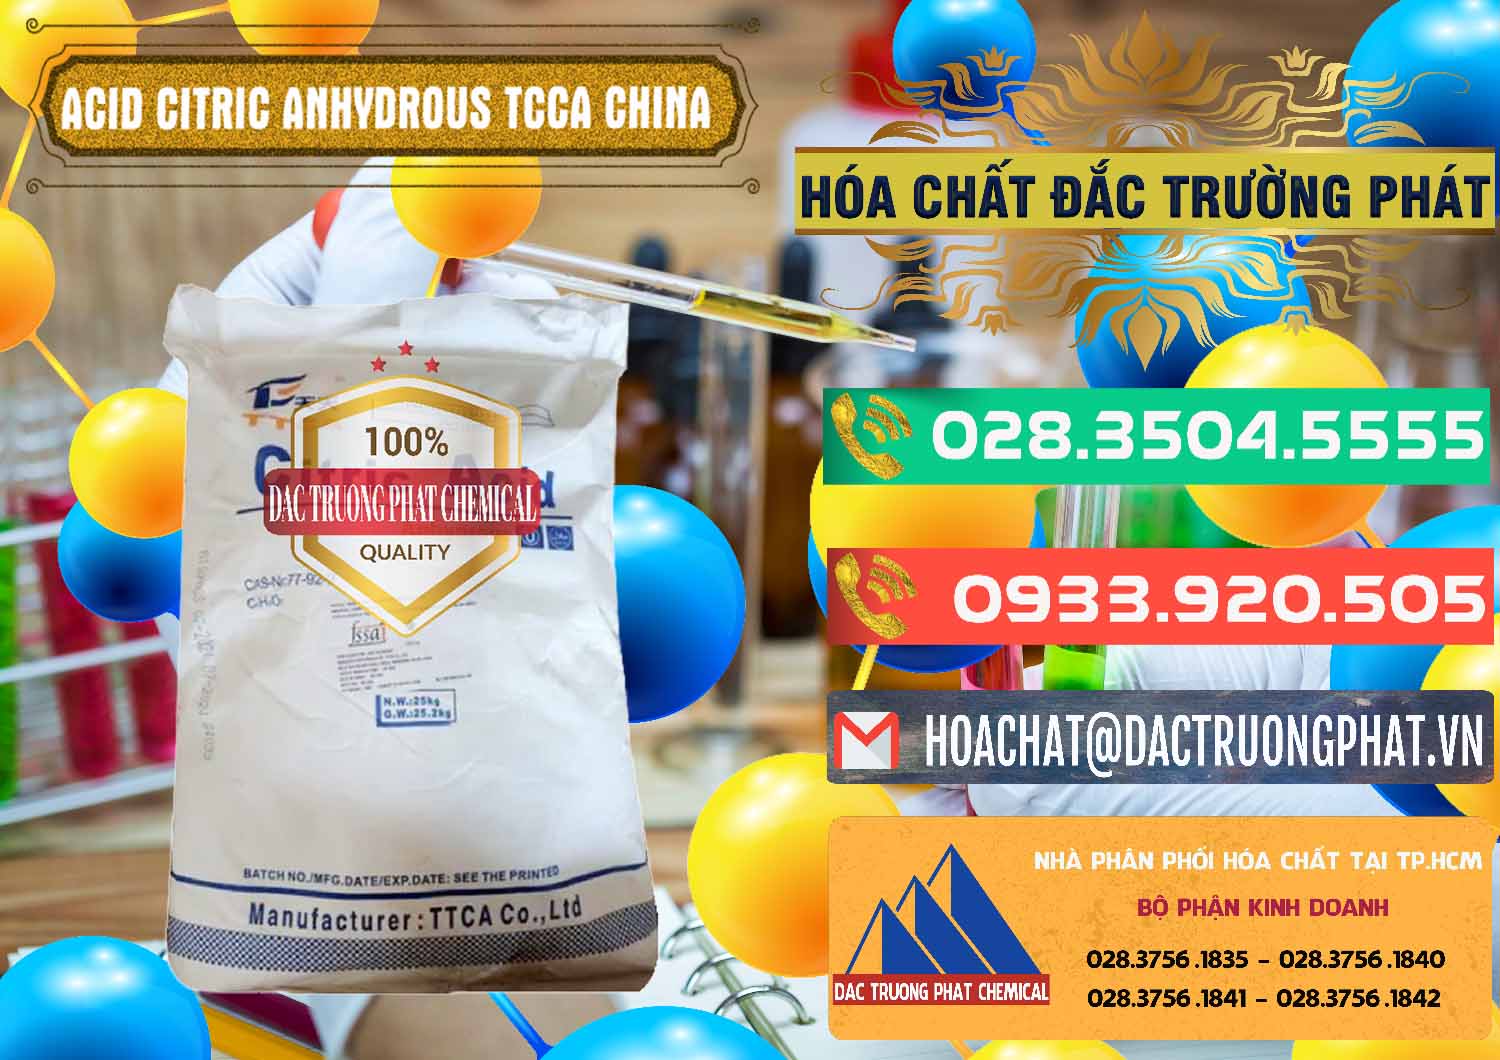 Nơi chuyên cung cấp & bán Acid Citric - Axit Citric Anhydrous TCCA Trung Quốc China - 0442 - Chuyên bán và cung cấp hóa chất tại TP.HCM - congtyhoachat.com.vn